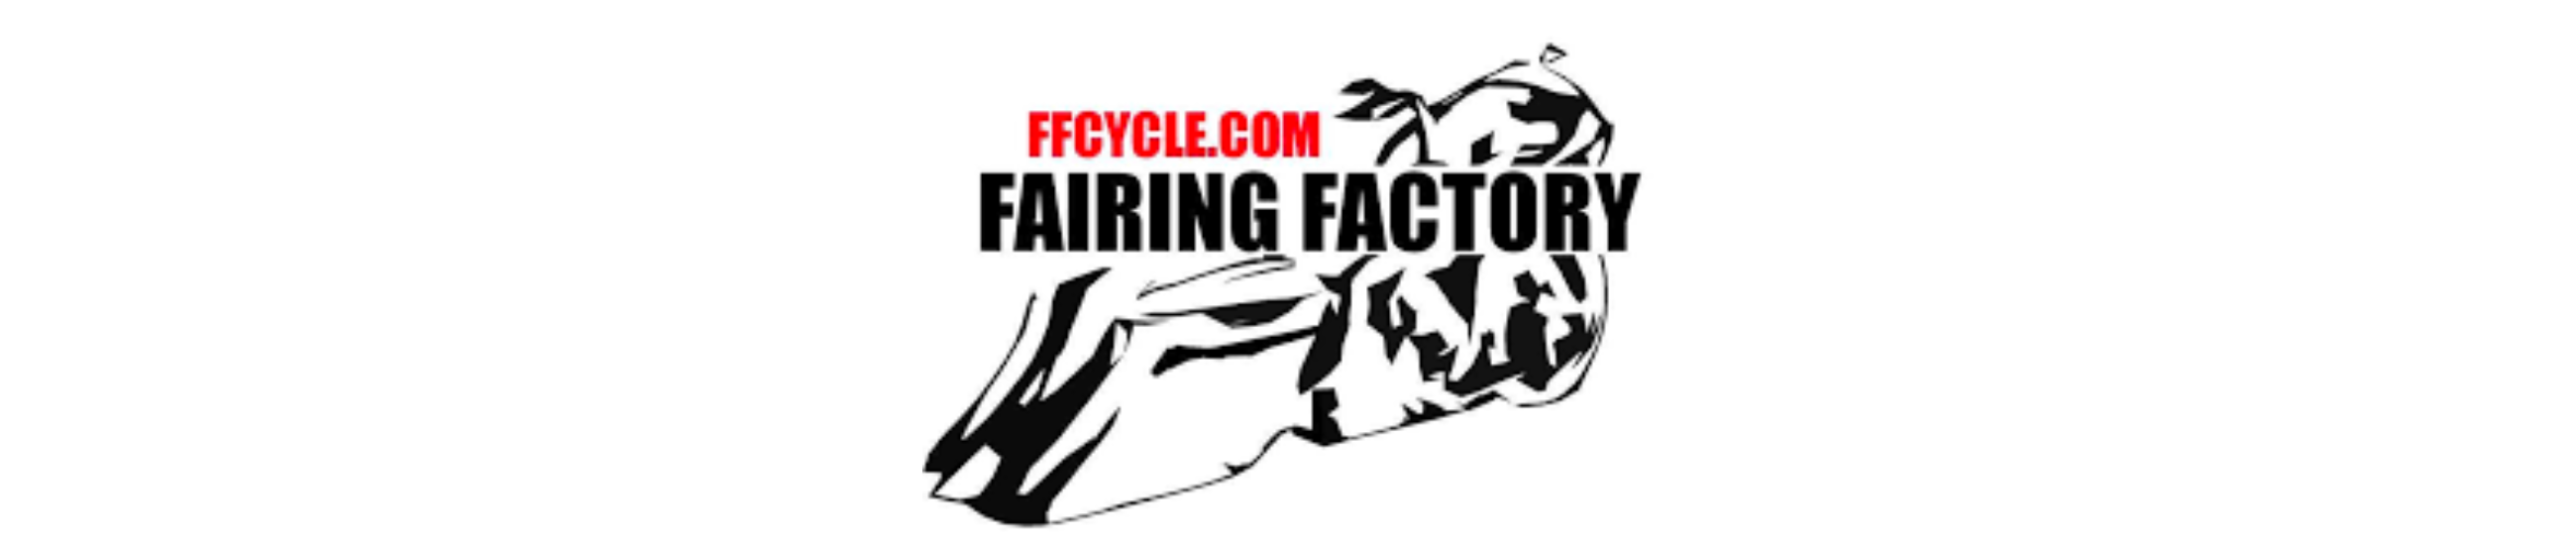 fairing factory logo